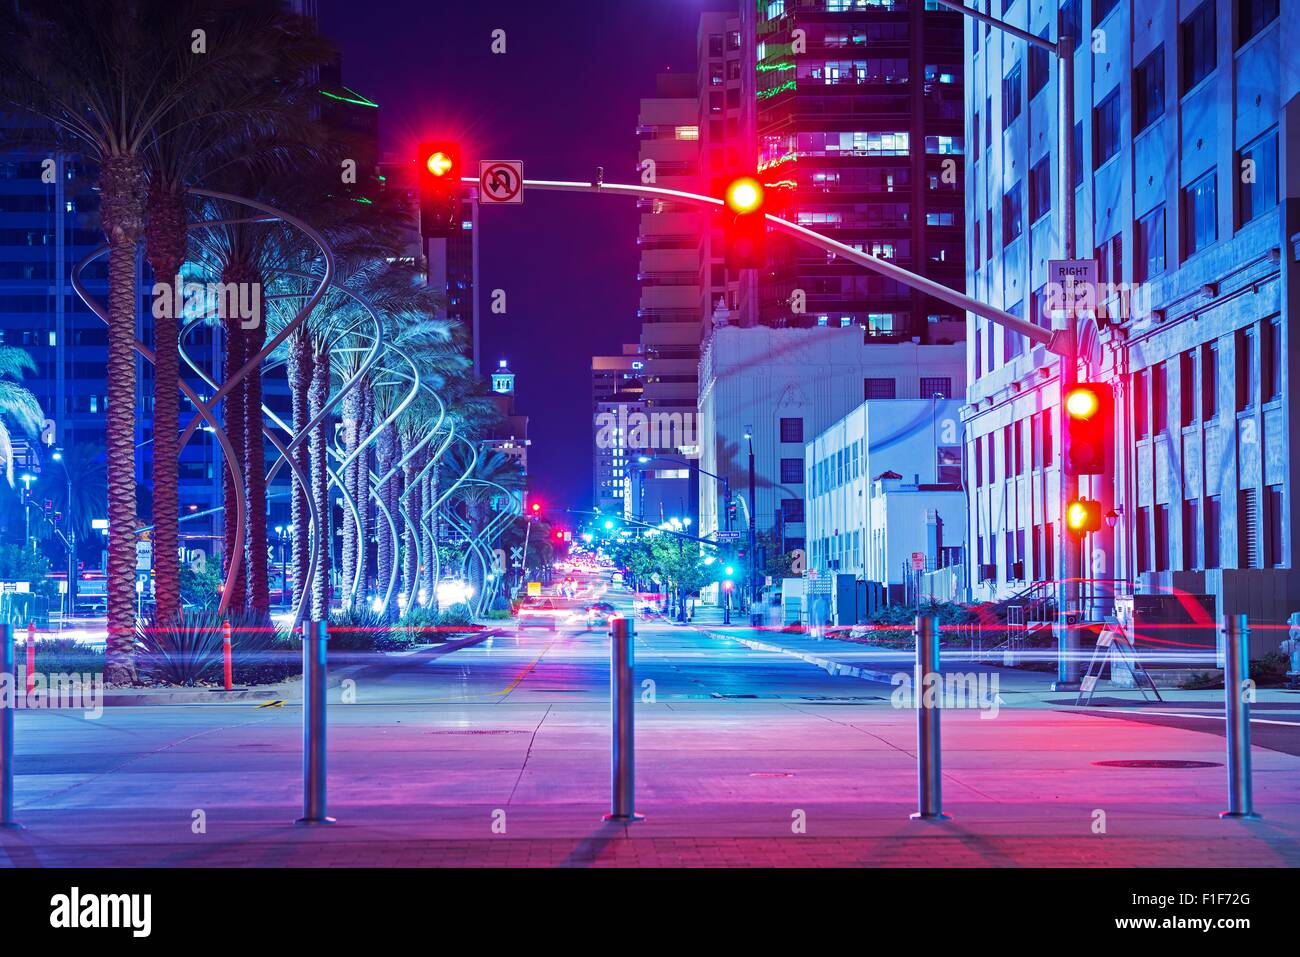 San Diego Centro Citta' intersezione di notte. Luci rosse di semafori. San Diego, California, Stati Uniti d'America. Foto Stock